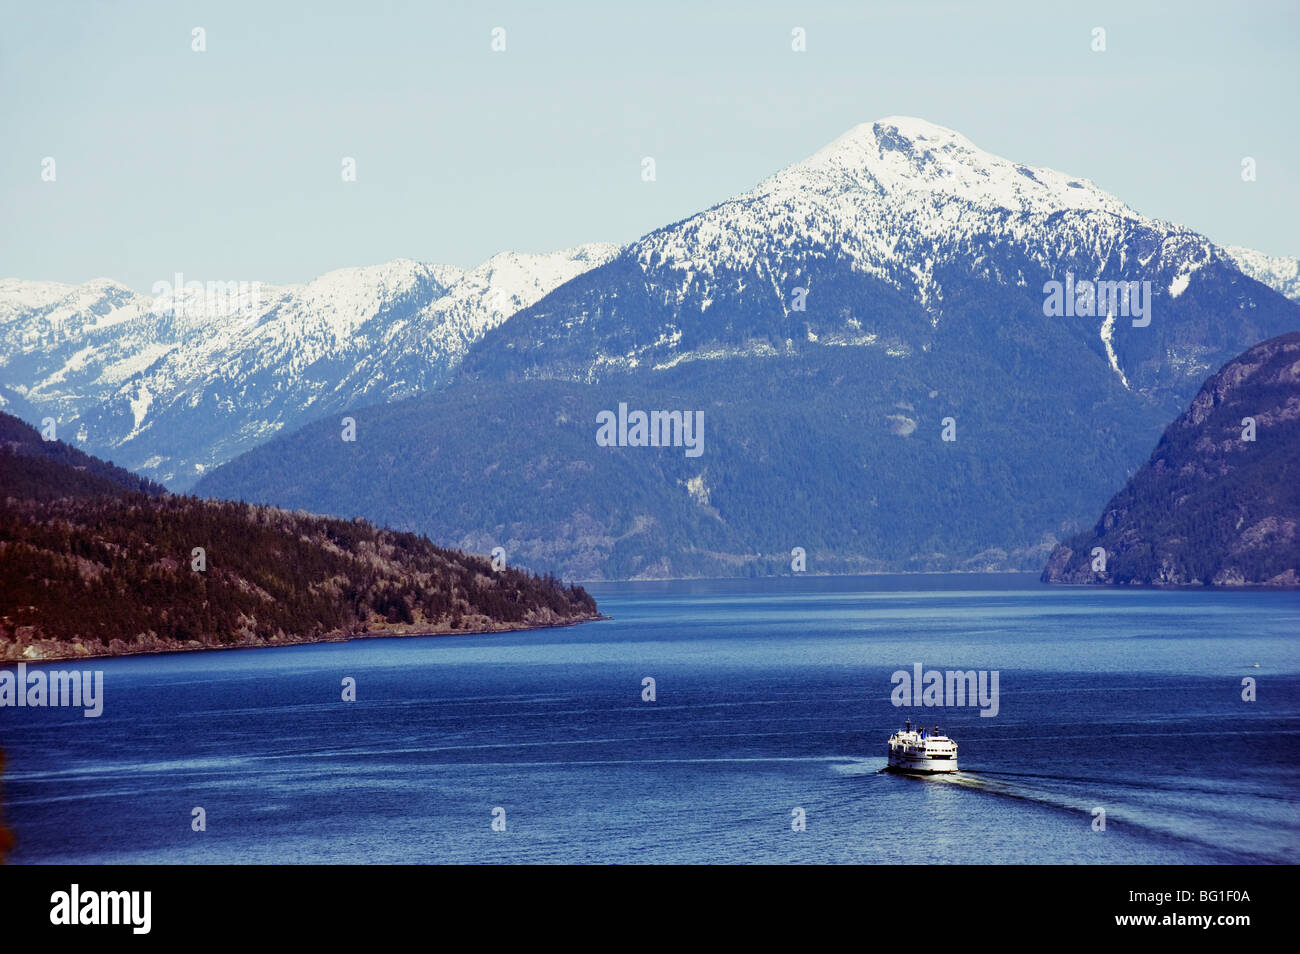 Un ferry dans la baie Howe, décor sur l'autoroute Sea to Sky, près de Vancouver, Colombie-Britannique, Canada, Amérique du Nord Banque D'Images